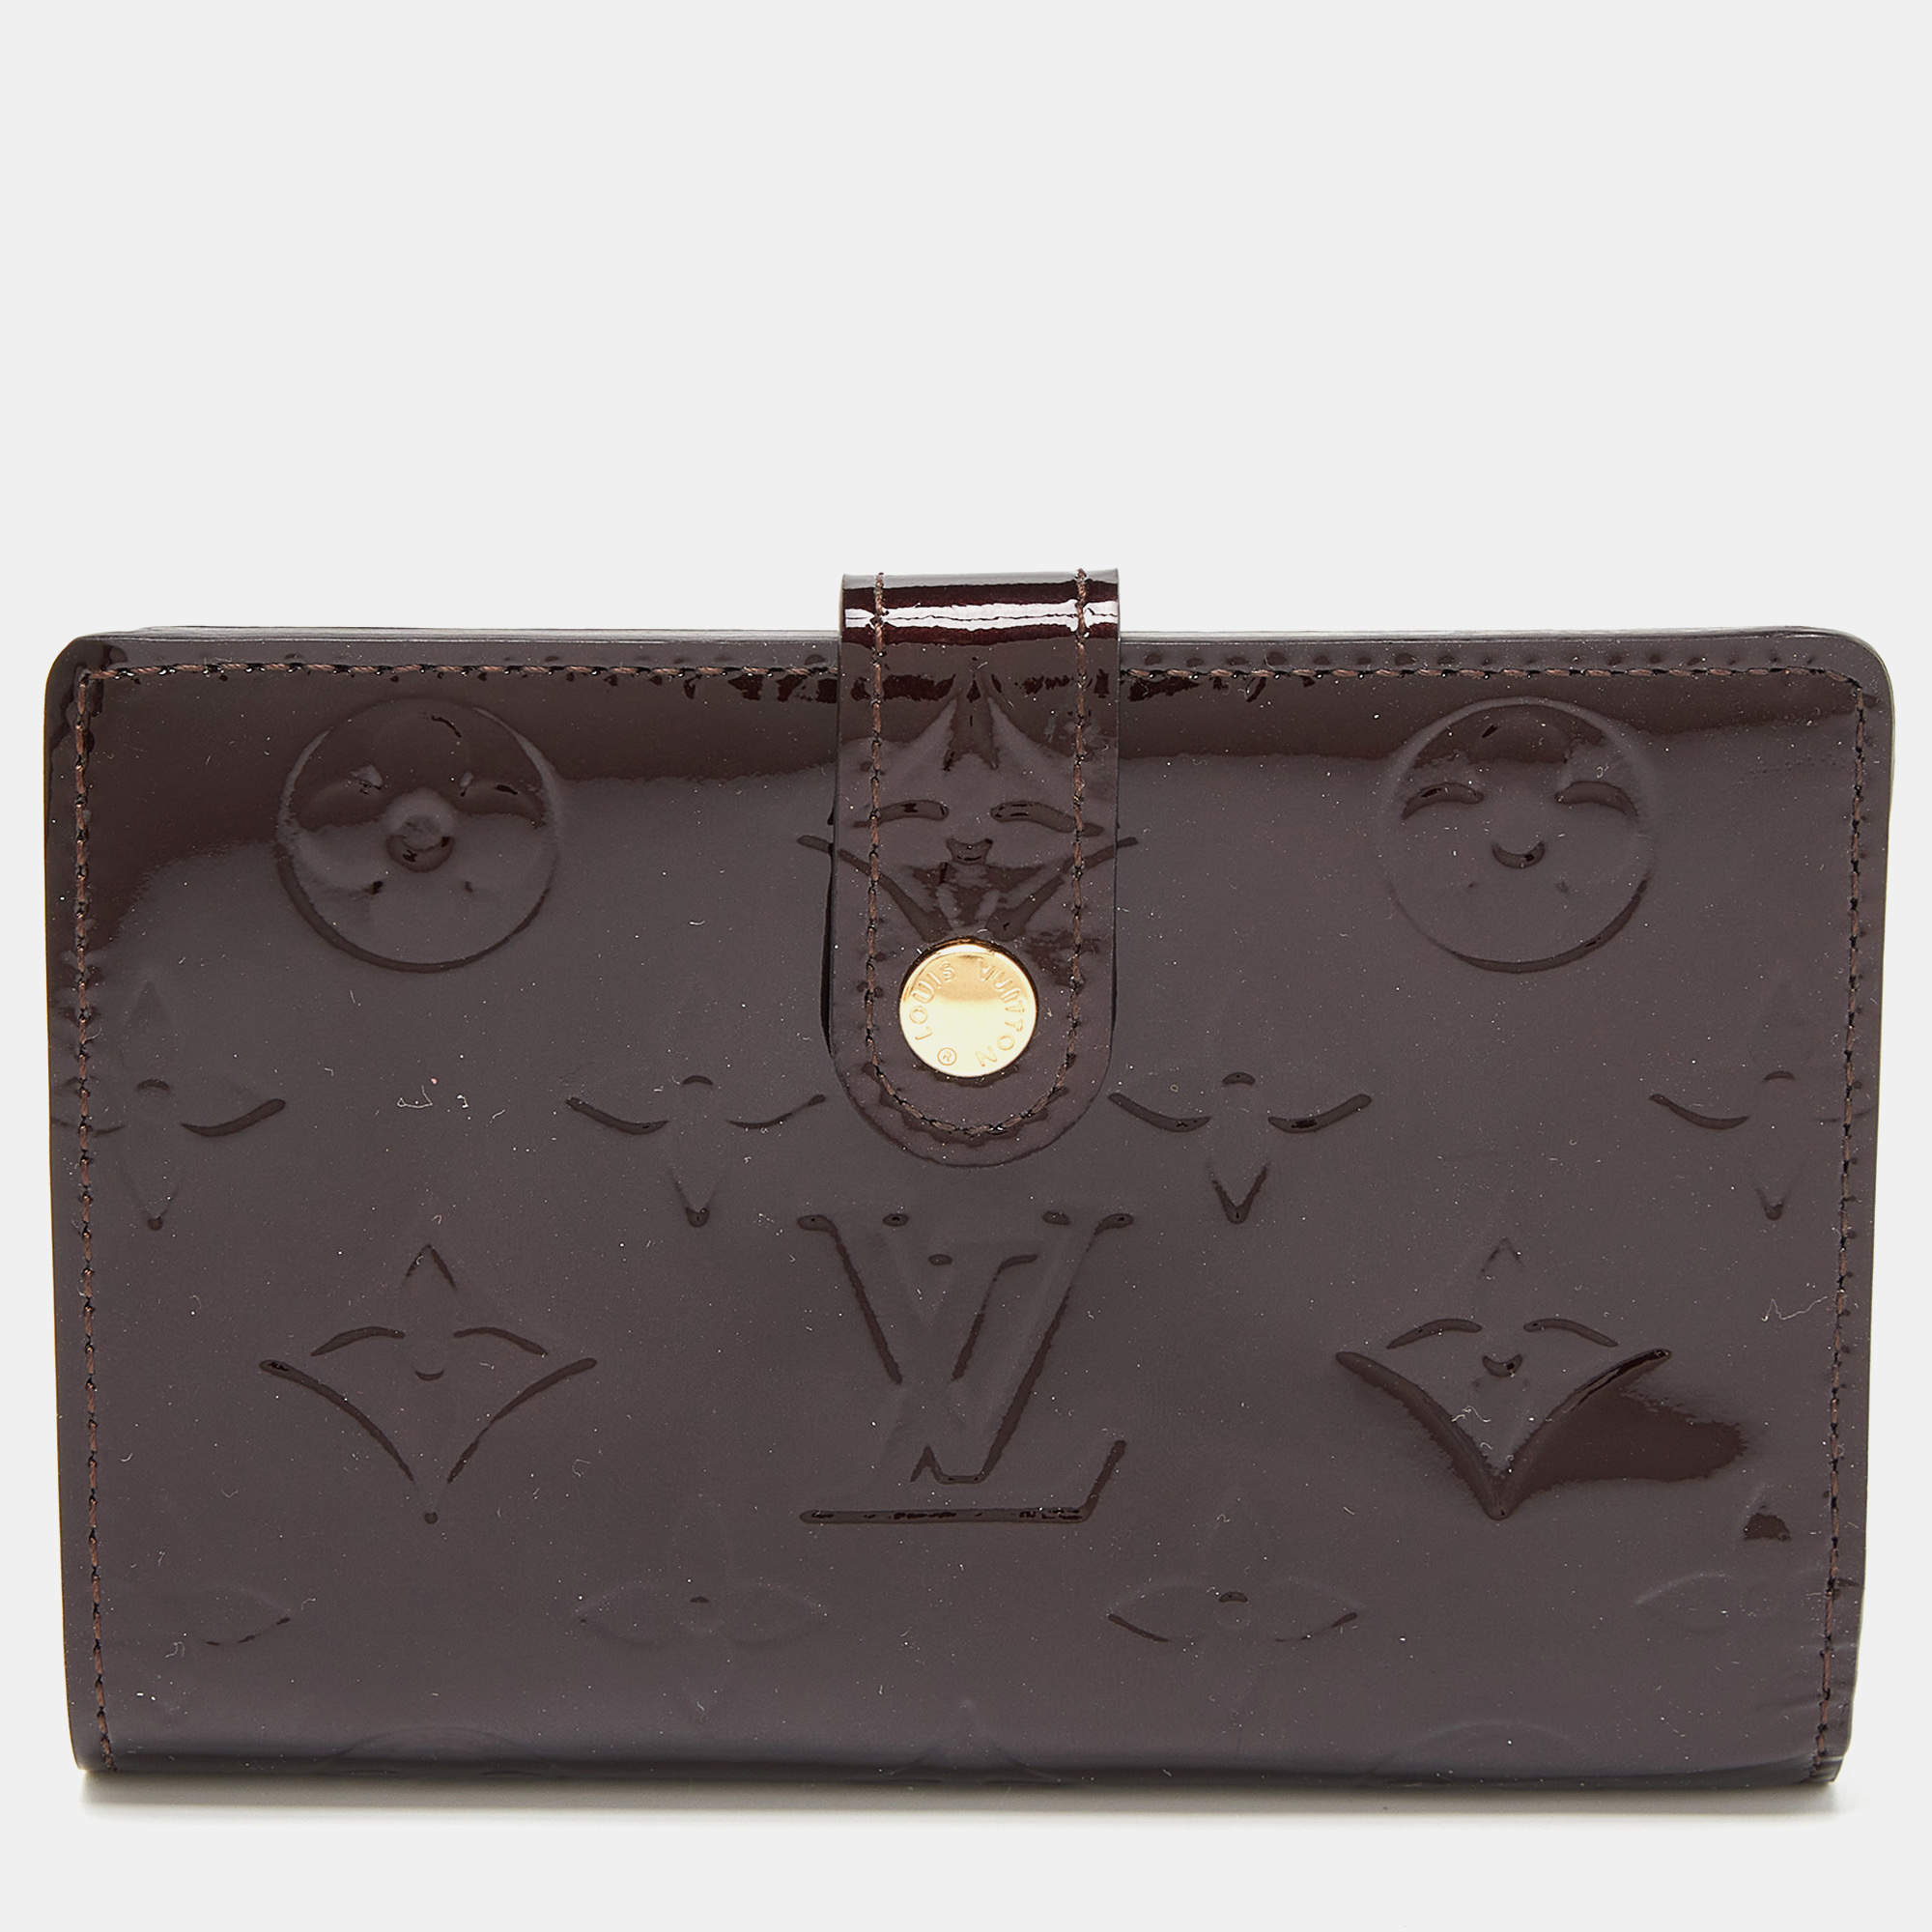 LOUIS VUITTON Vernis French Purse Wallet Amarante 968090